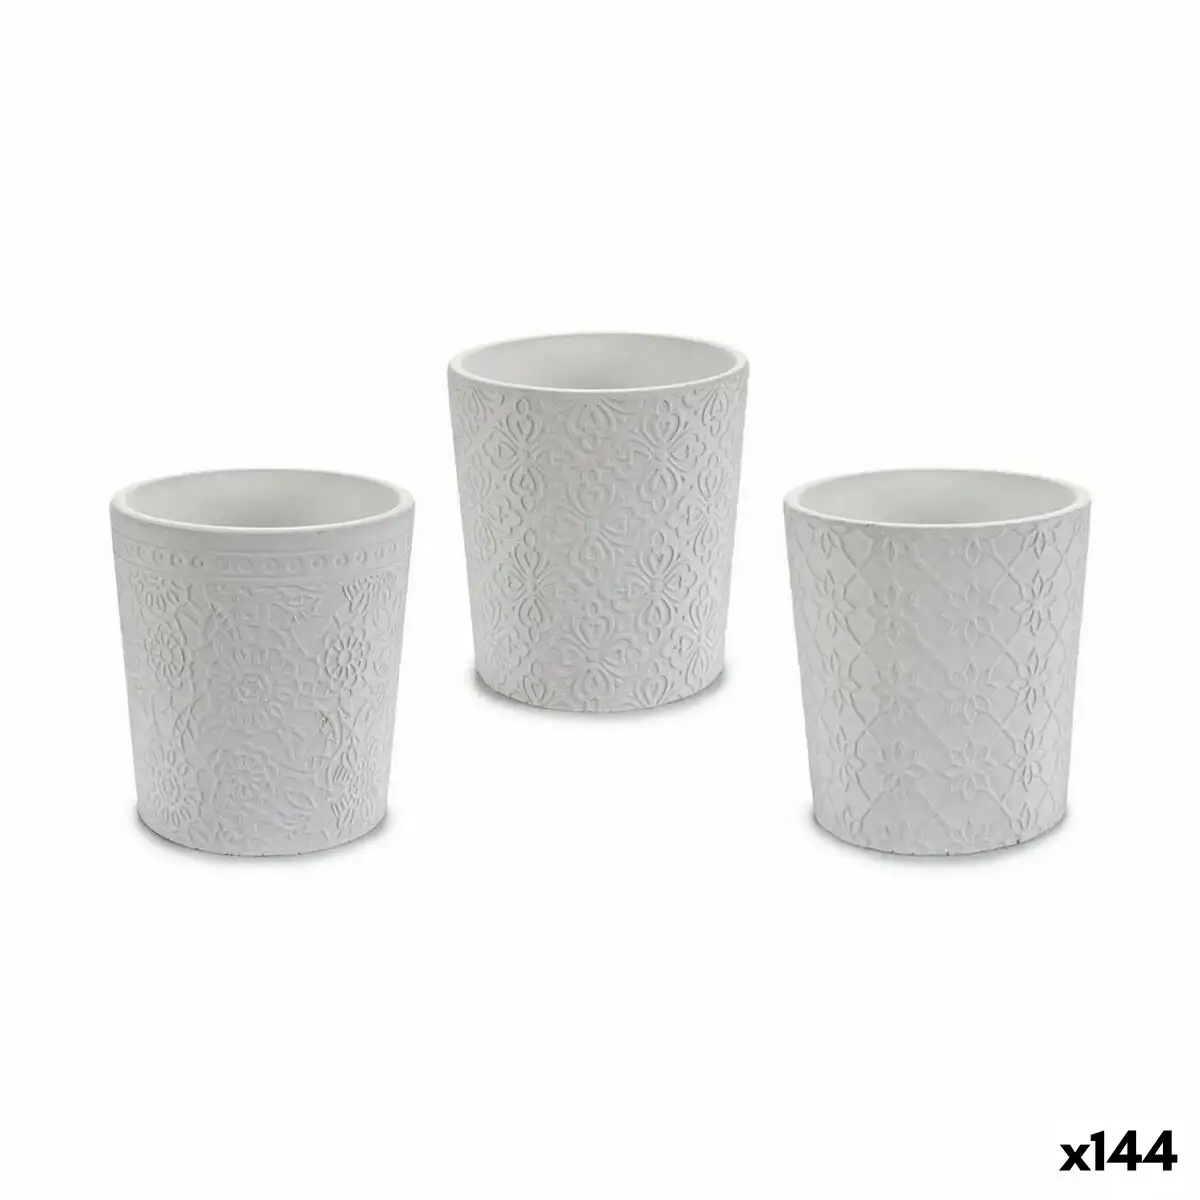 Cache pot modele blanc ceramique 12 3 x 12 x 12 3 cm 144 unites _1789. DIAYTAR SENEGAL - Là où Chaque Clic Compte. Parcourez notre boutique en ligne et laissez-vous guider vers des trouvailles uniques qui enrichiront votre quotidien.